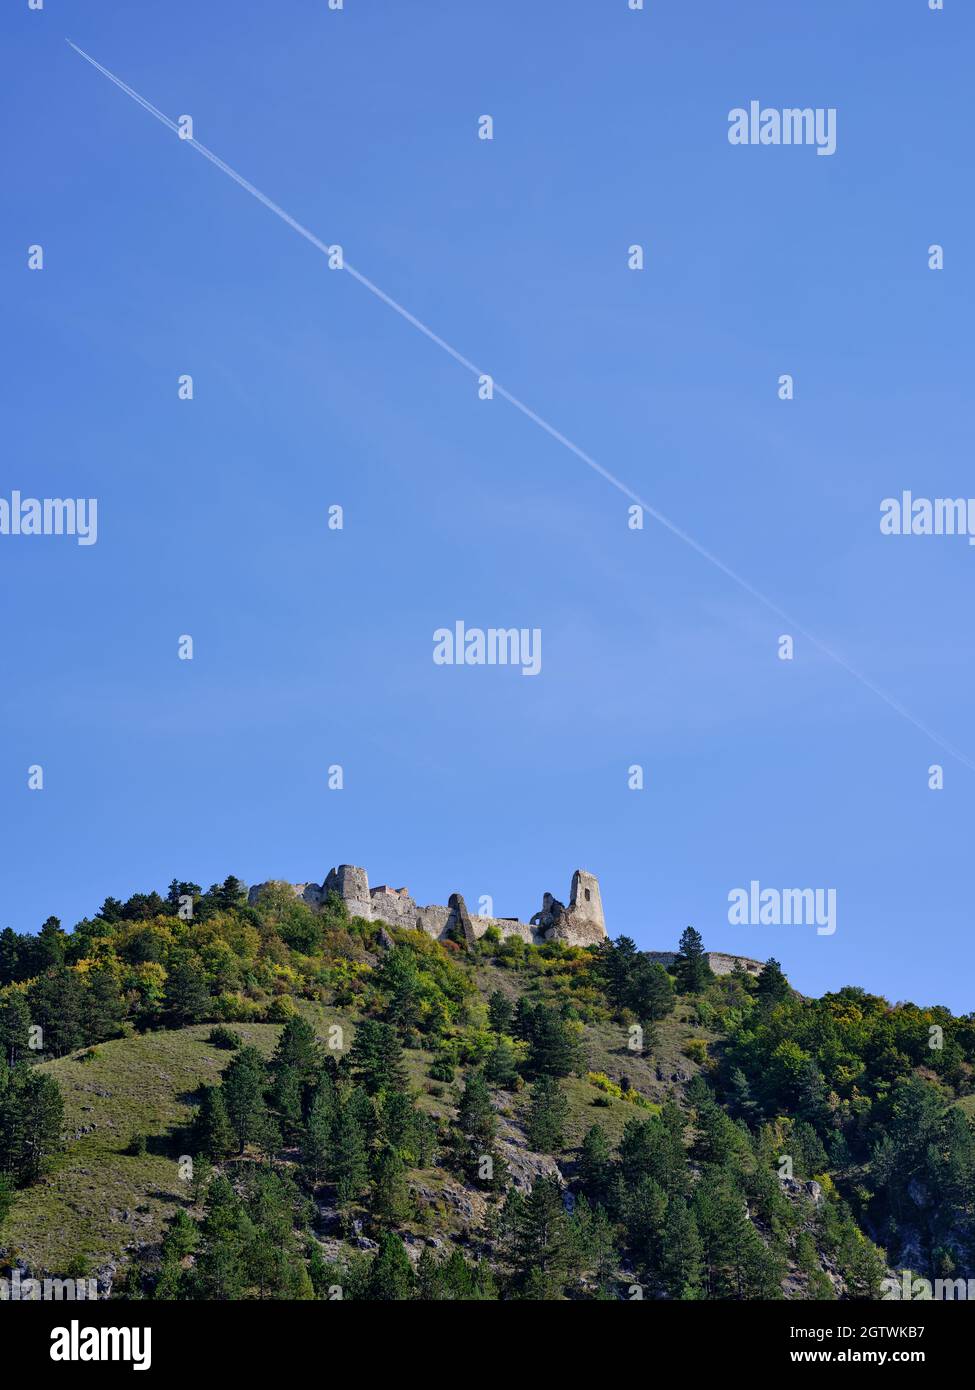 Les ruines du château de Cachtice sur la montagne, Slovaquie Banque D'Images